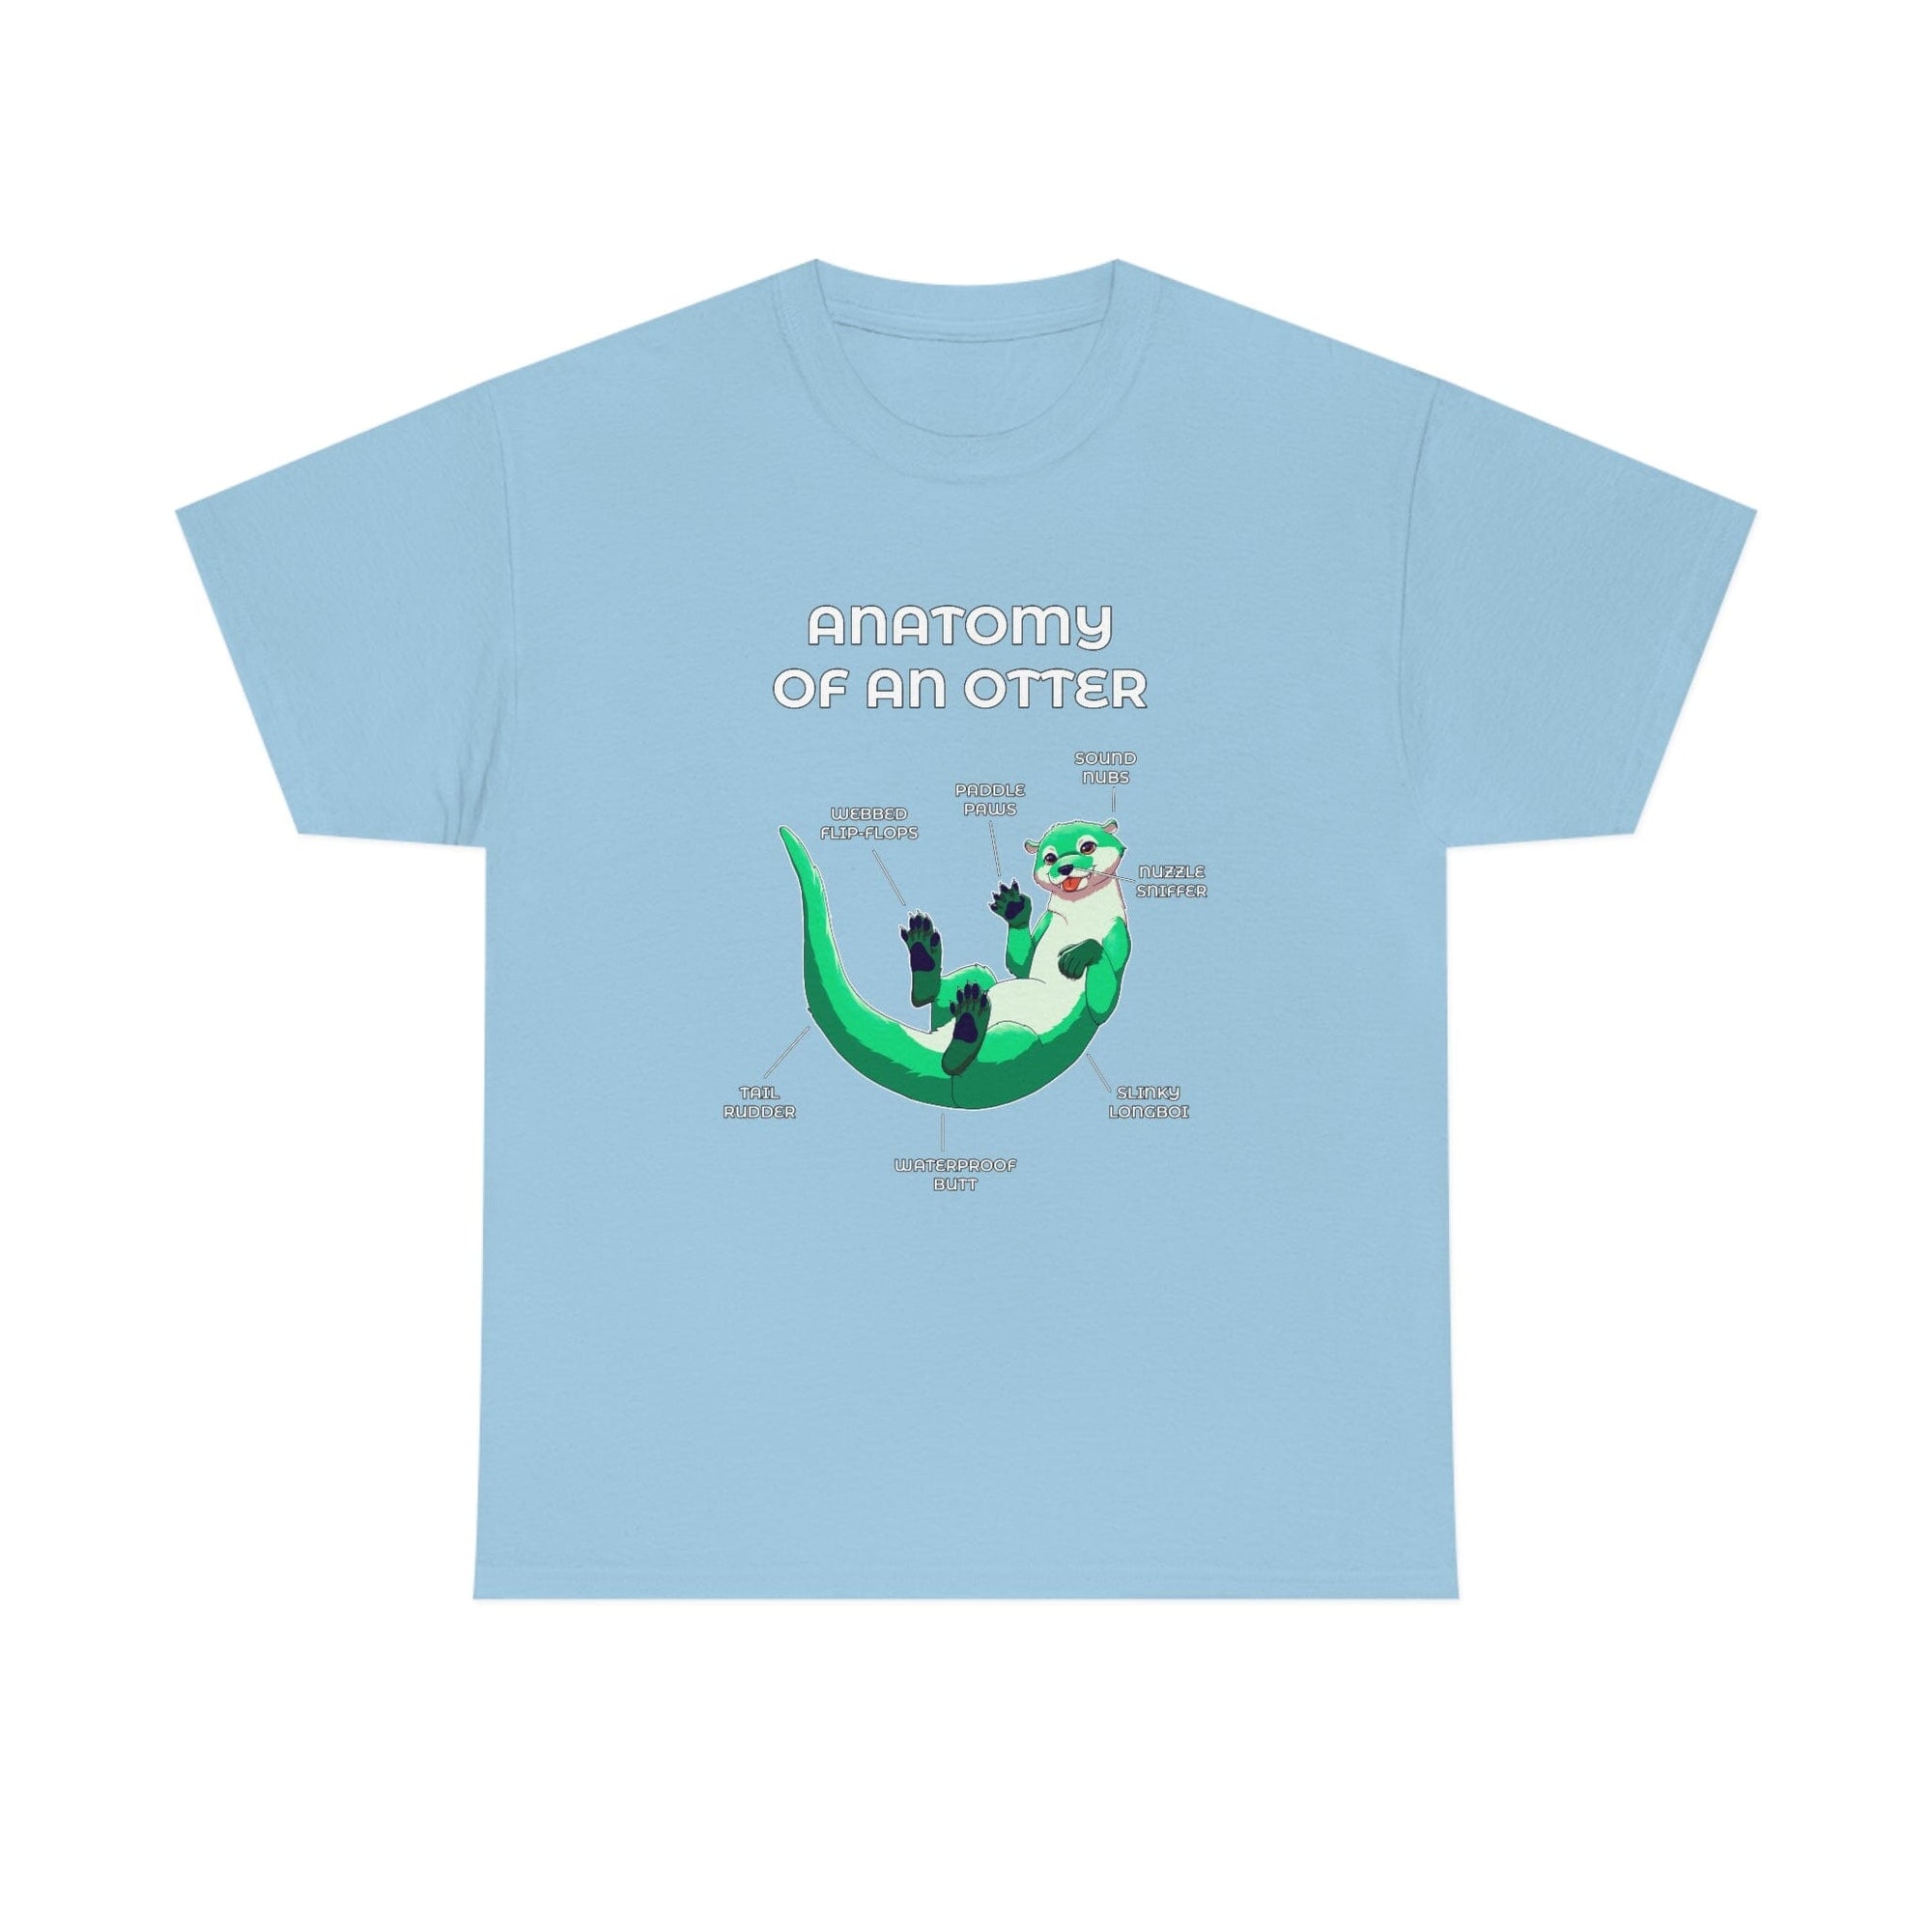 Otter Green - T-Shirt T-Shirt Artworktee Light Blue S 